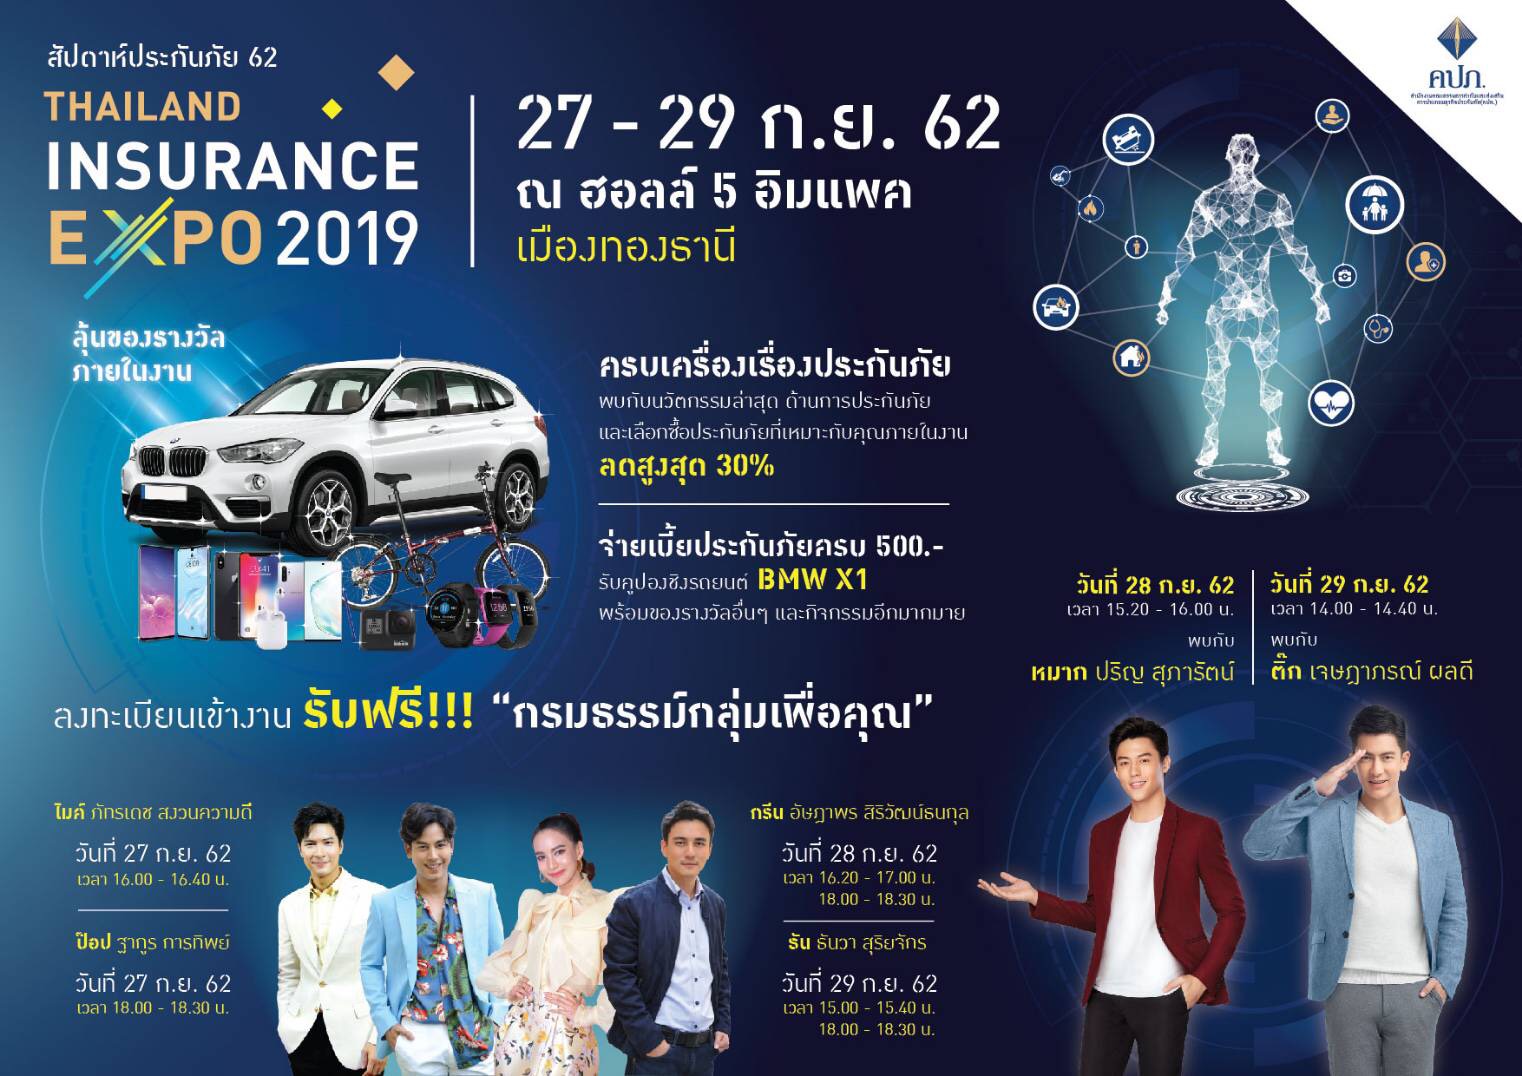 Thailand Insurance Expo 2019